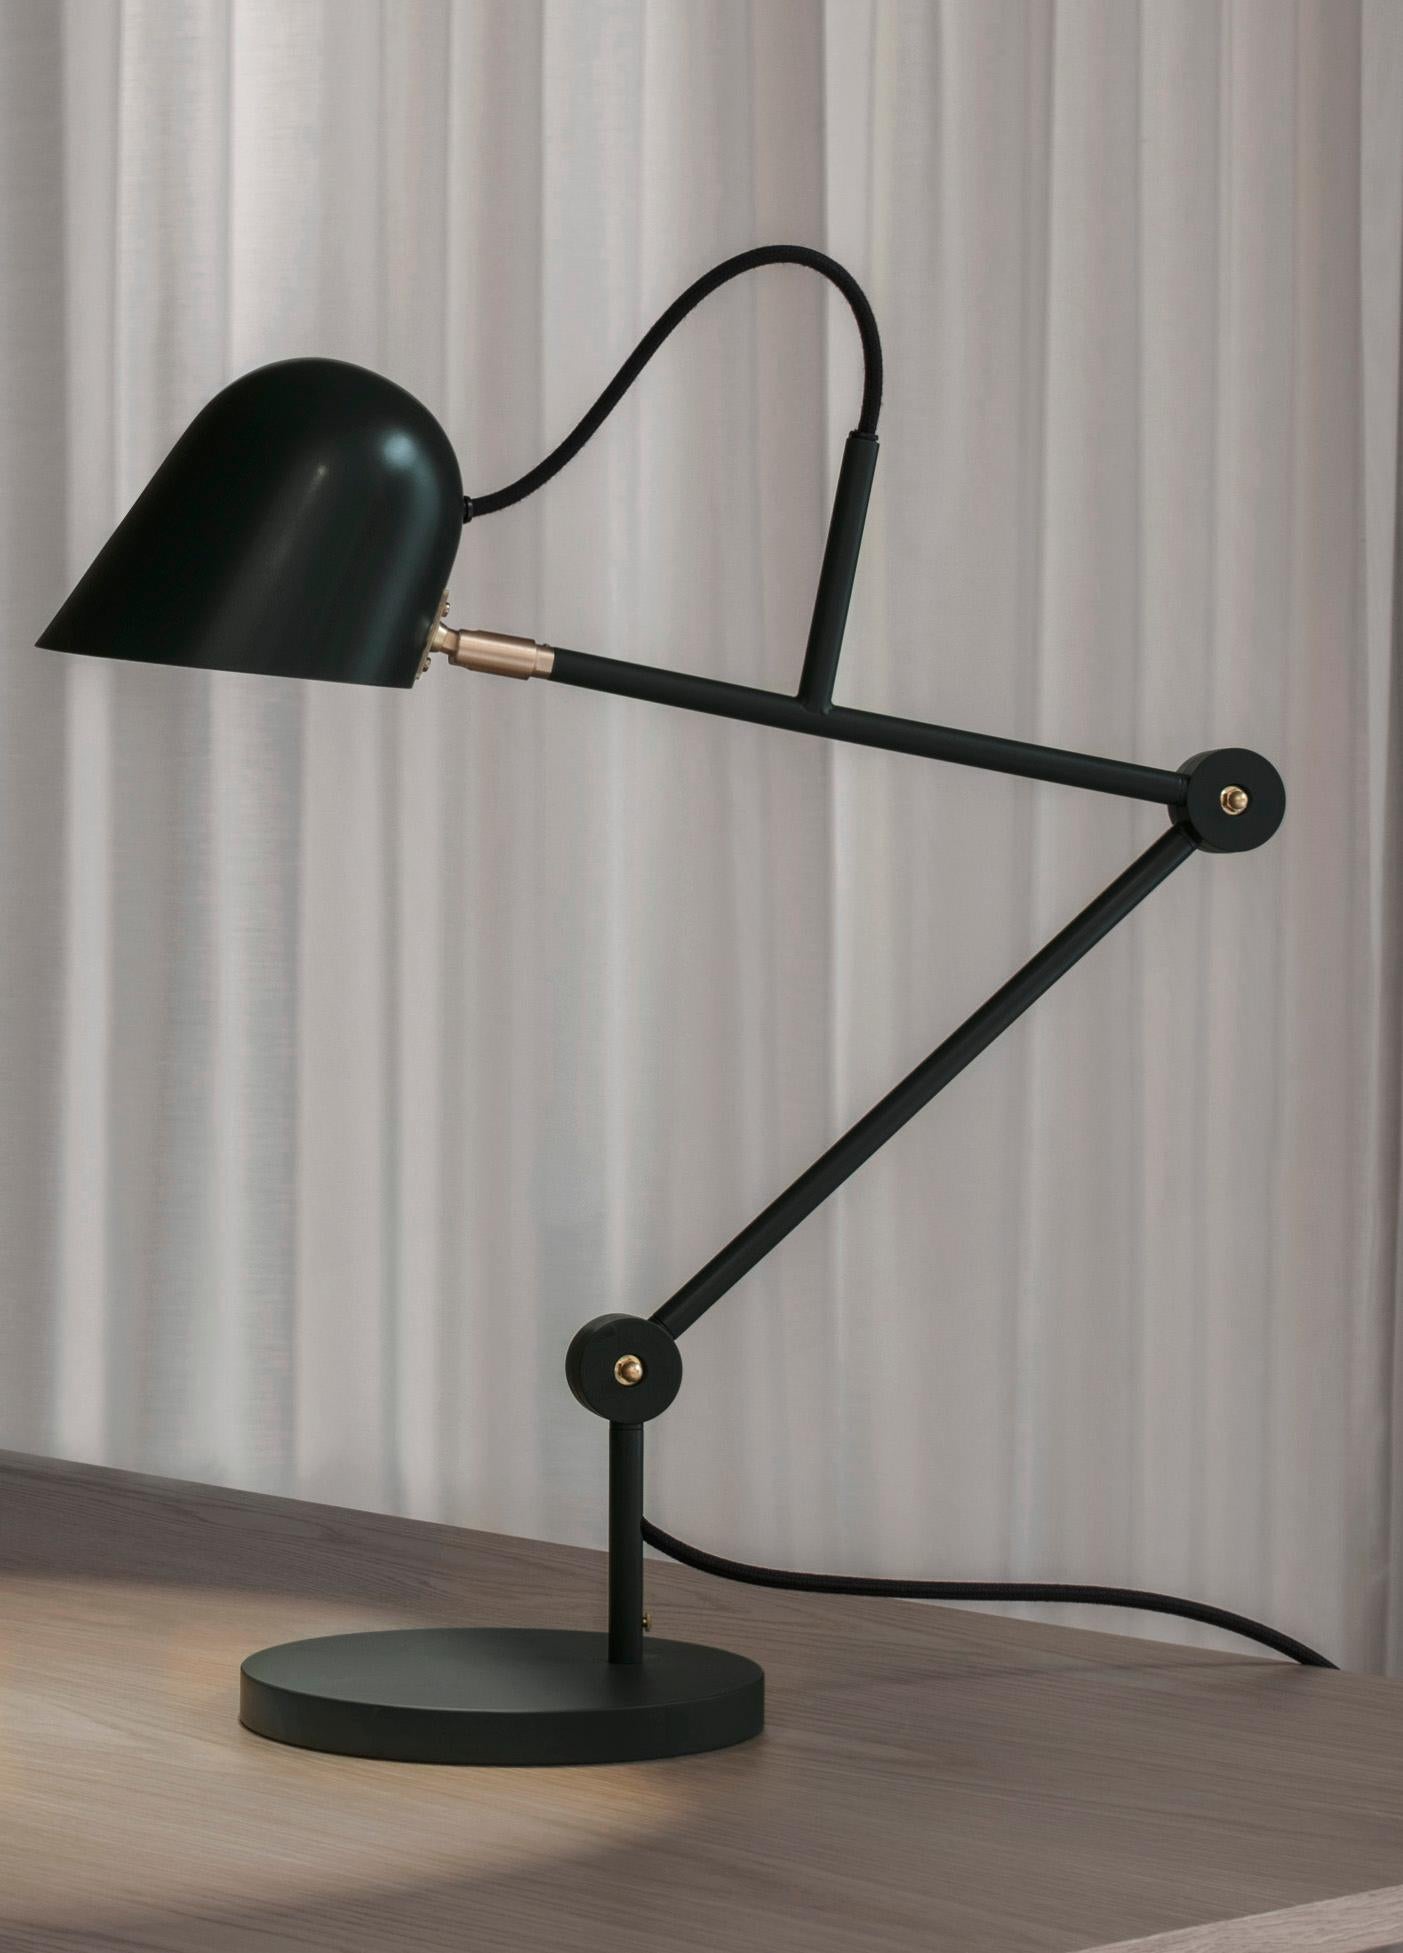 Powder-Coated 'Streck' Adjustable Table Lamp by Joel Karlsson for Örsjö in Pine Green For Sale